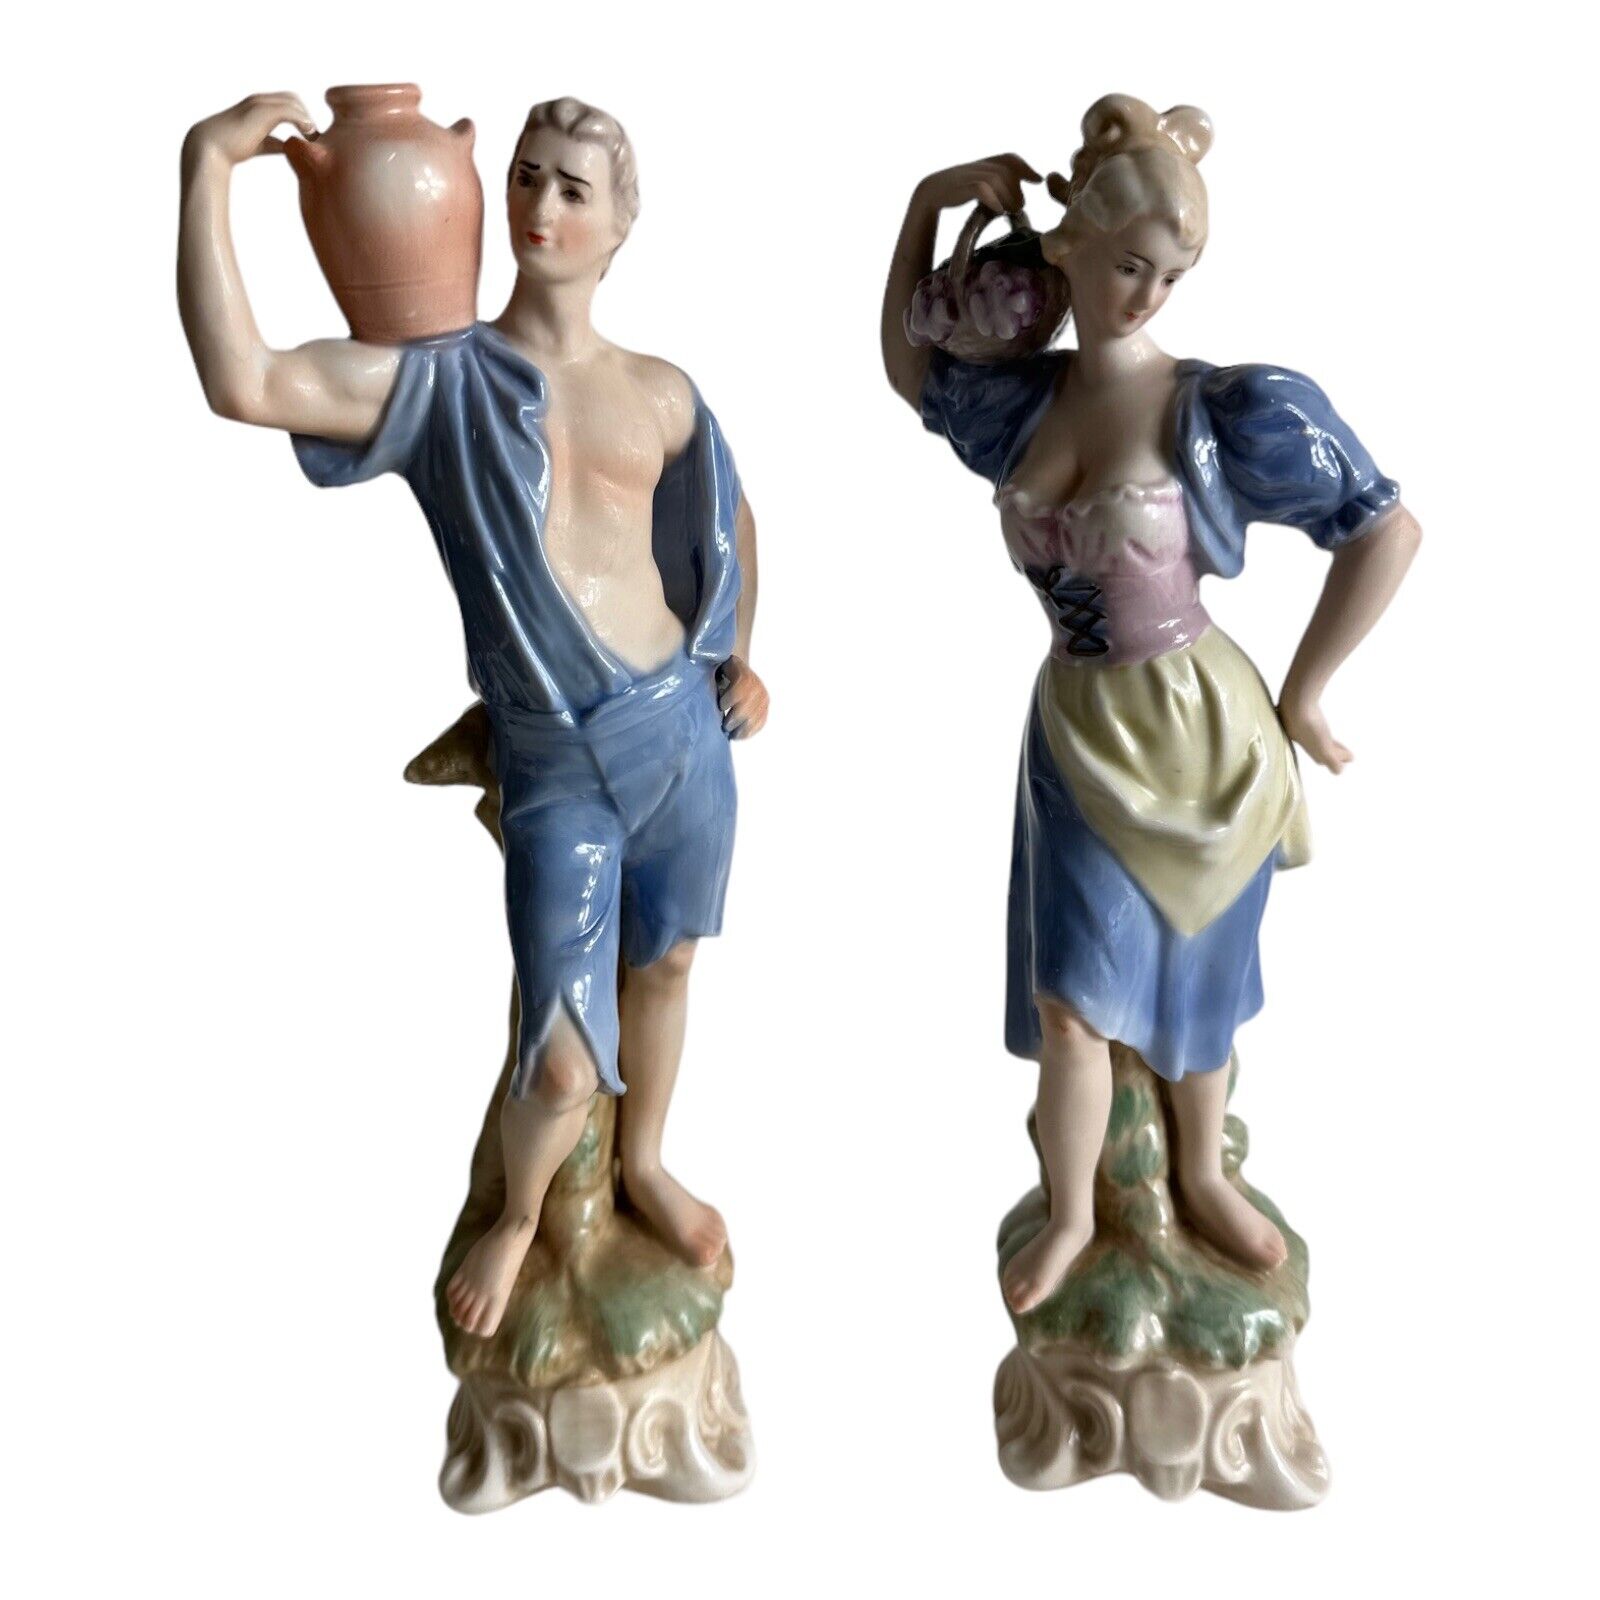 Pair Vintage Porcelain Figurines - Ardalt (Figurines)   # 7712